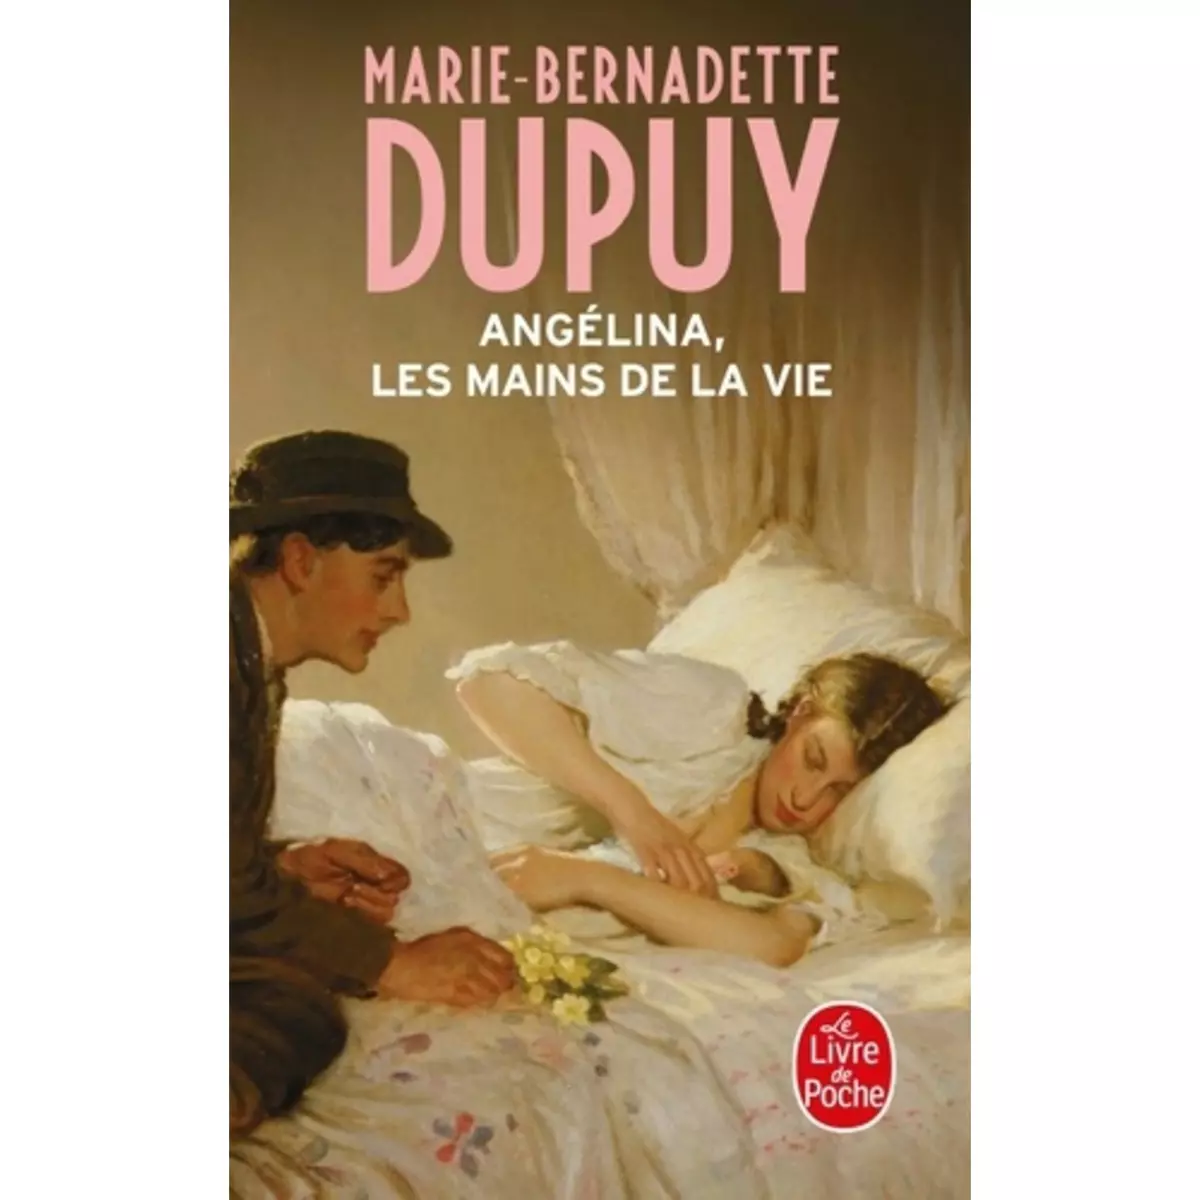  ANGELINA TOME 1 : LES MAINS DE LA VIE, Dupuy Marie-Bernadette